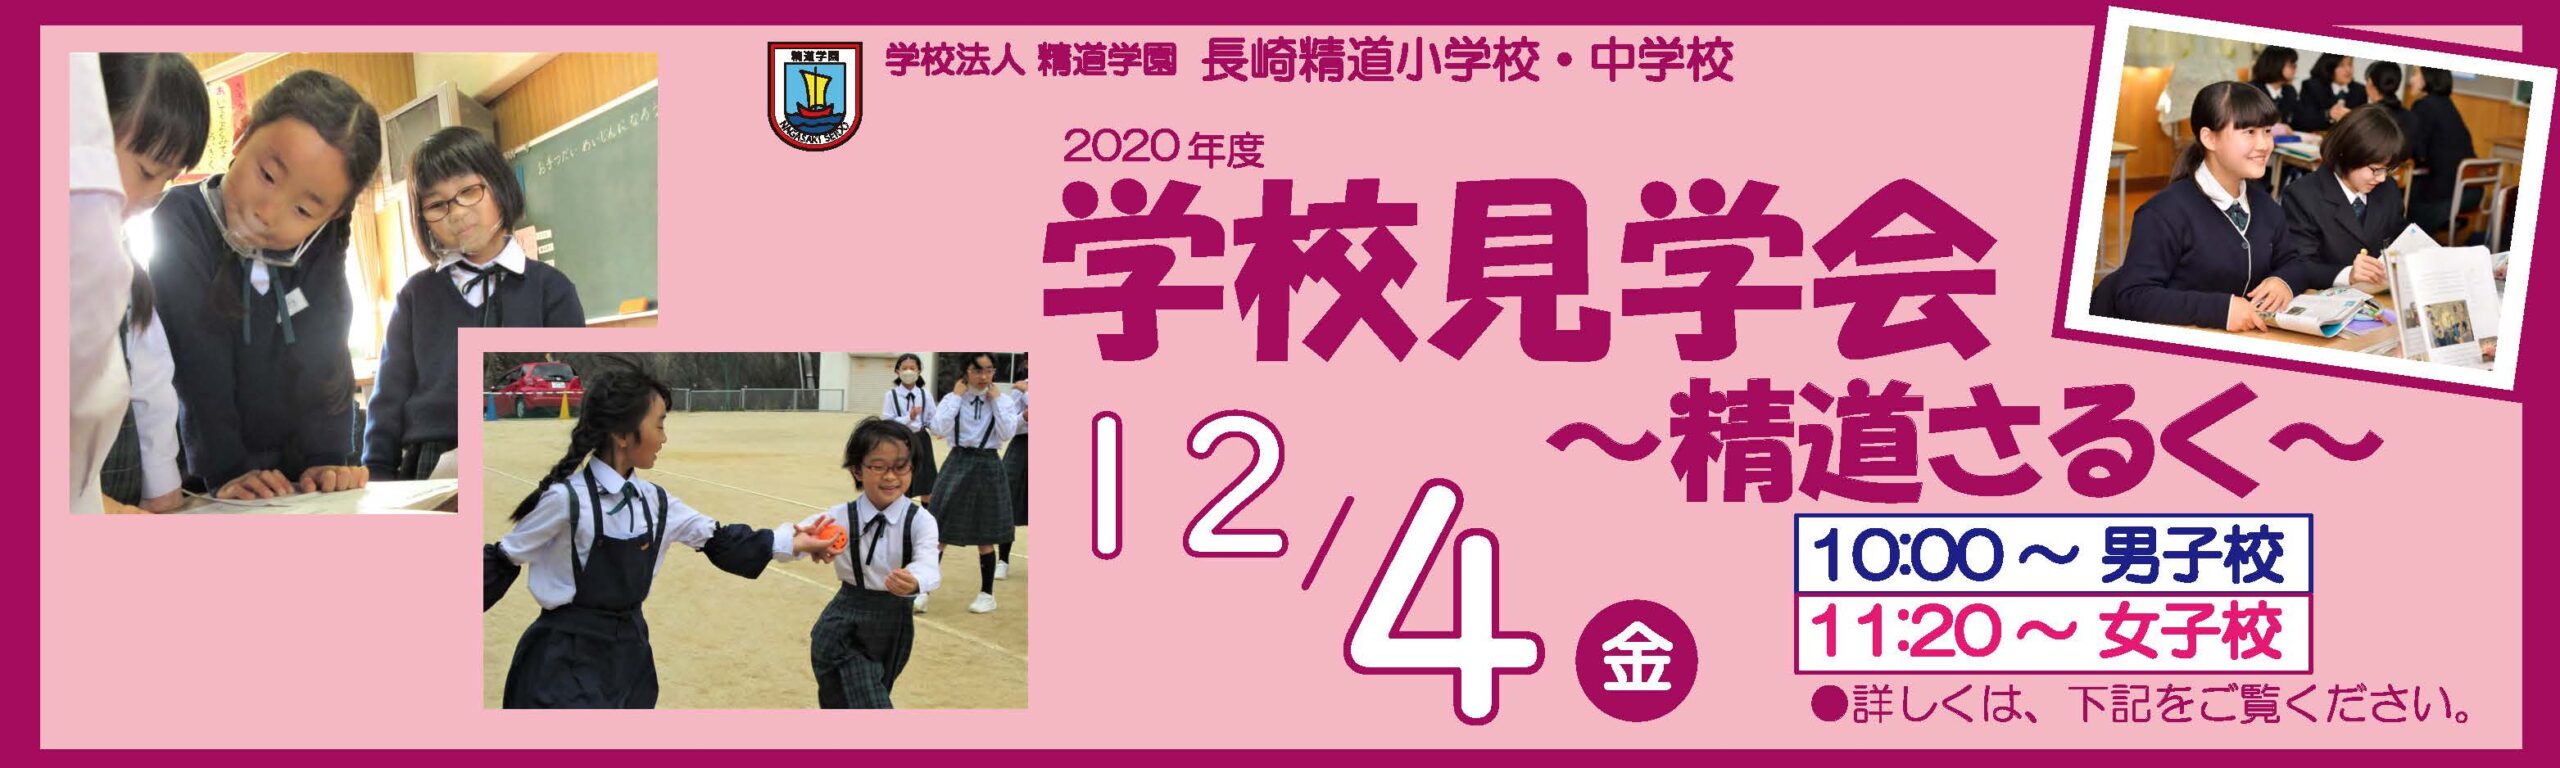 学校見学会「精道さるく」20201204